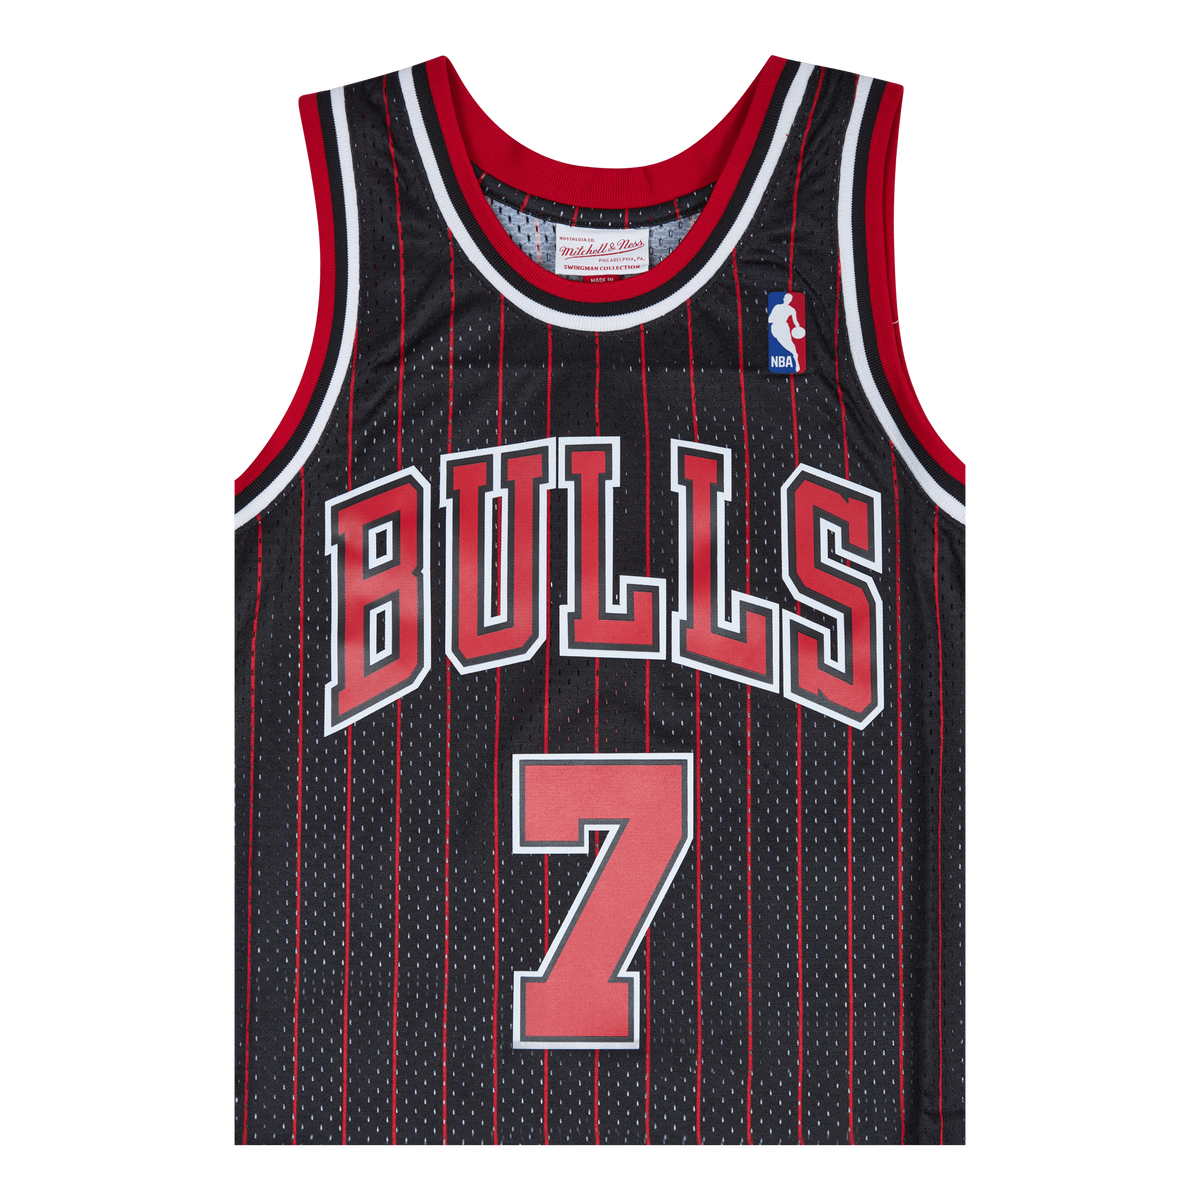 Bulls Swingman Jersey - Toni Kukoc